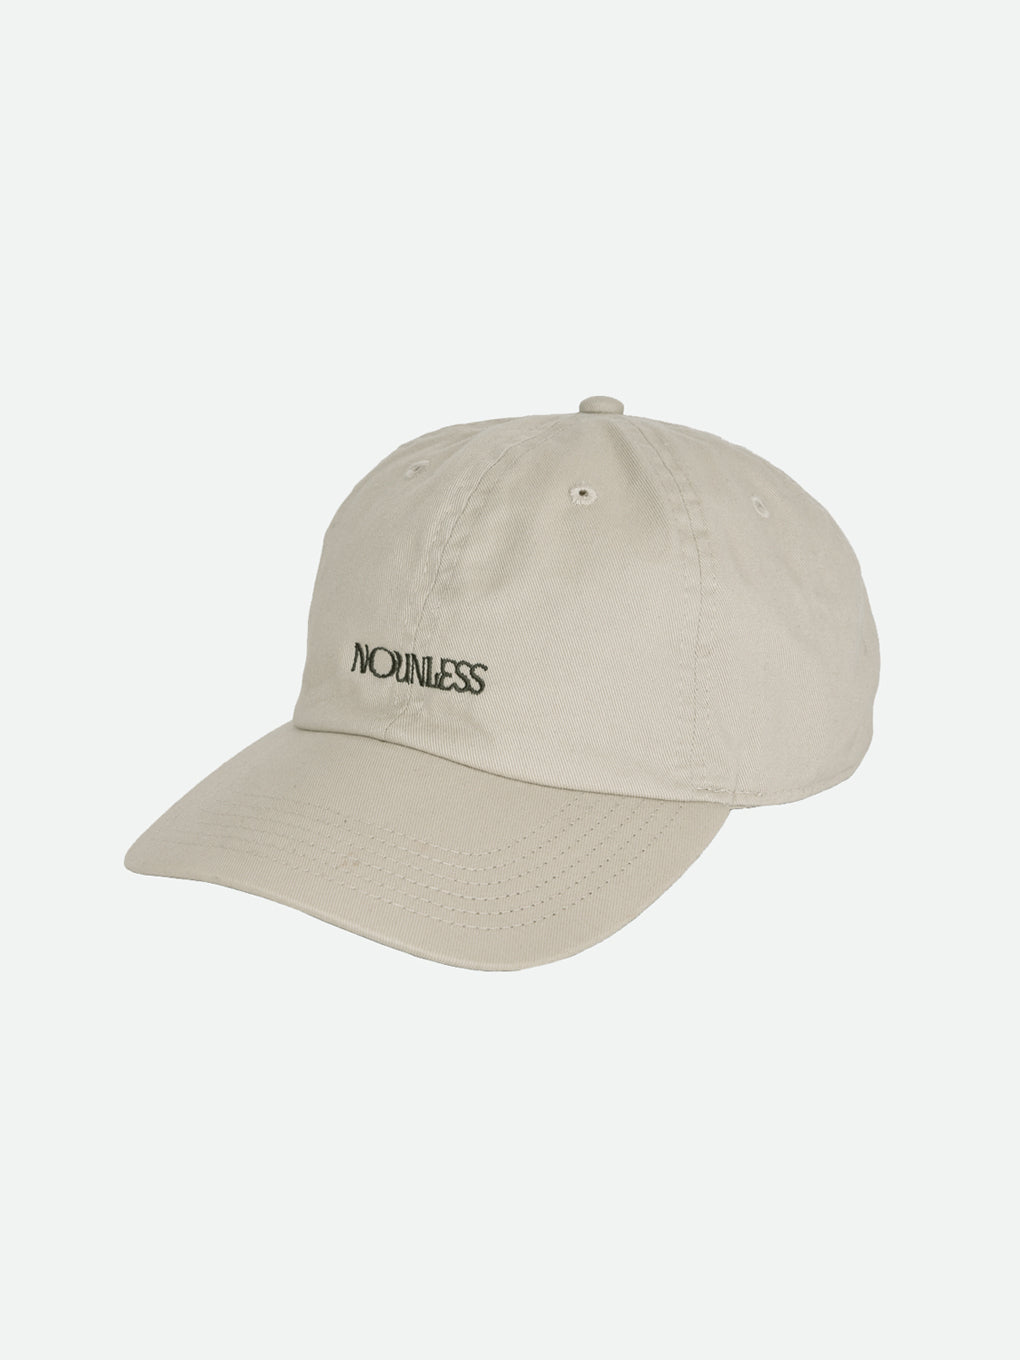 NOUNLESS LOGO CAP